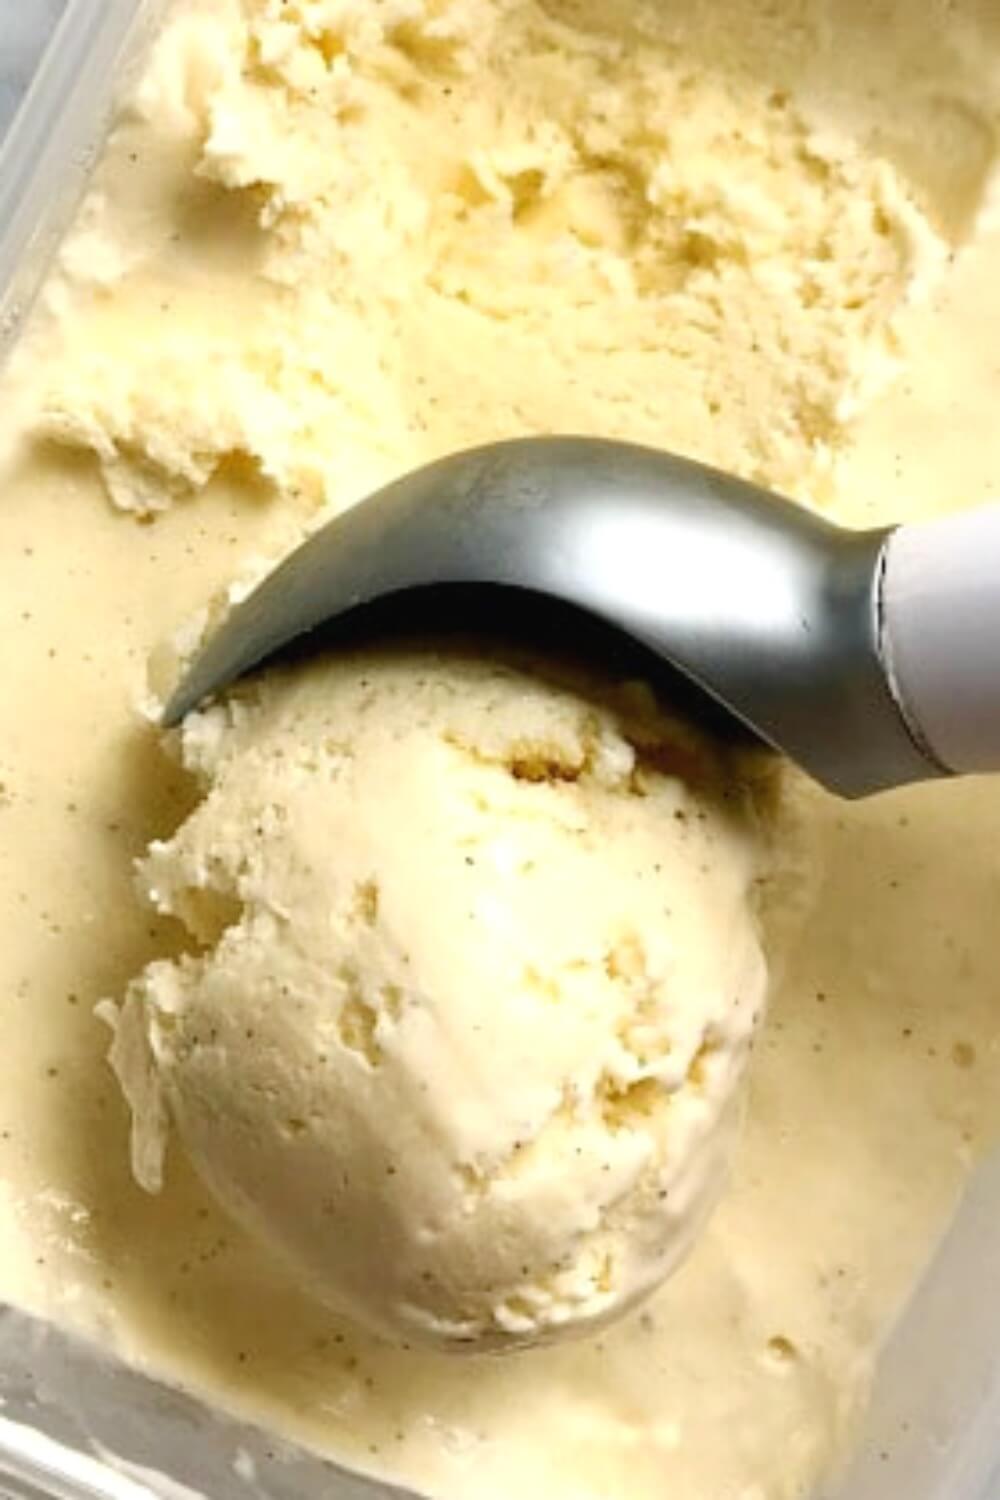 A scoop of vanilla ice cream on an ice cream tub